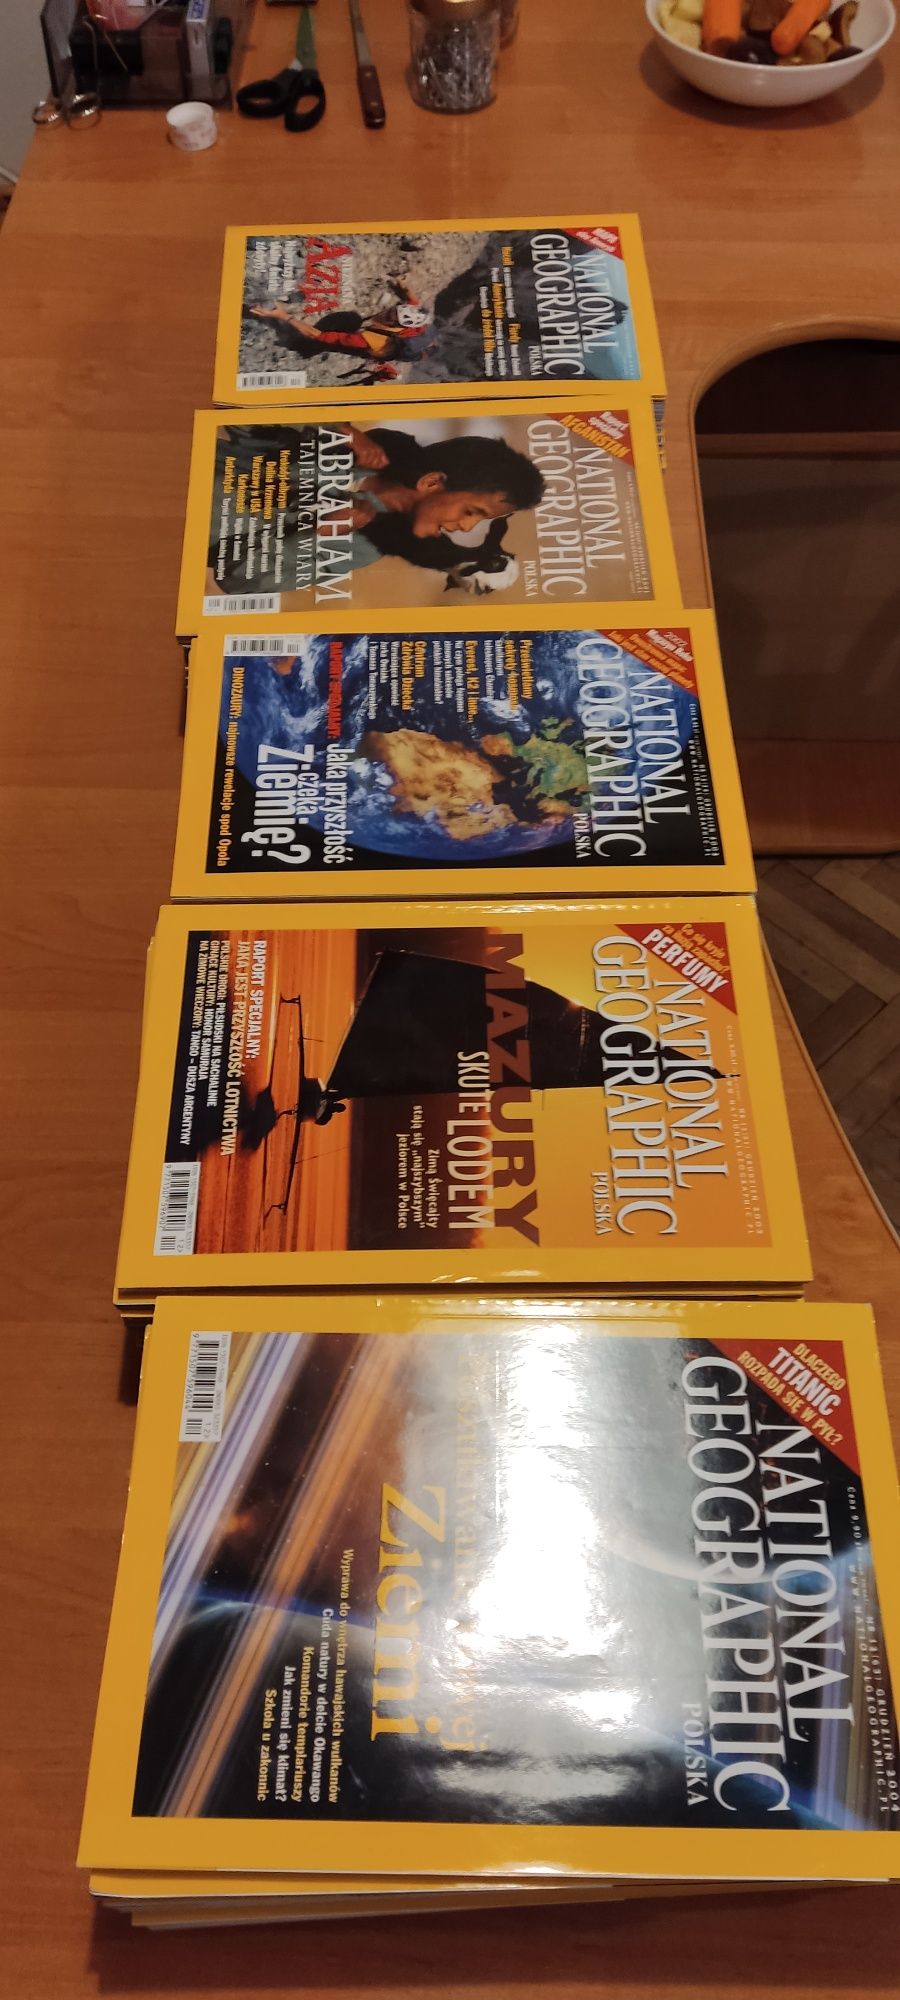 National Geographic Miesięczniki od 1999 - 2008